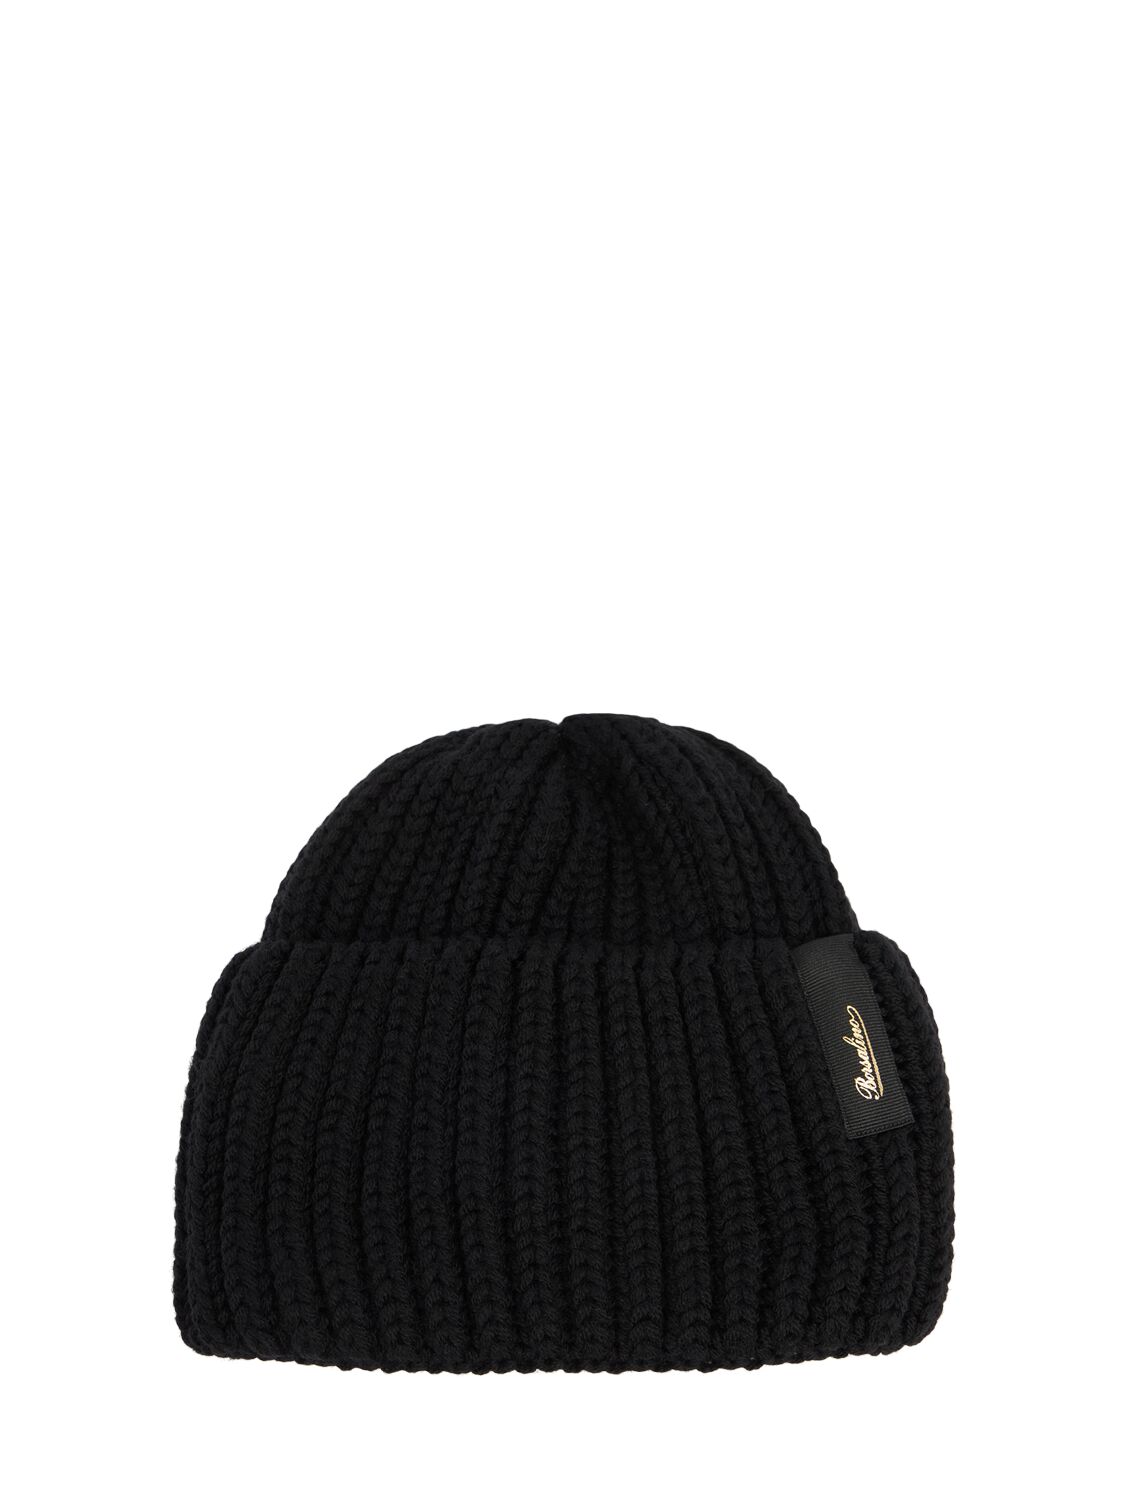 Borsalino Bell Wool Knit Beanie In Black